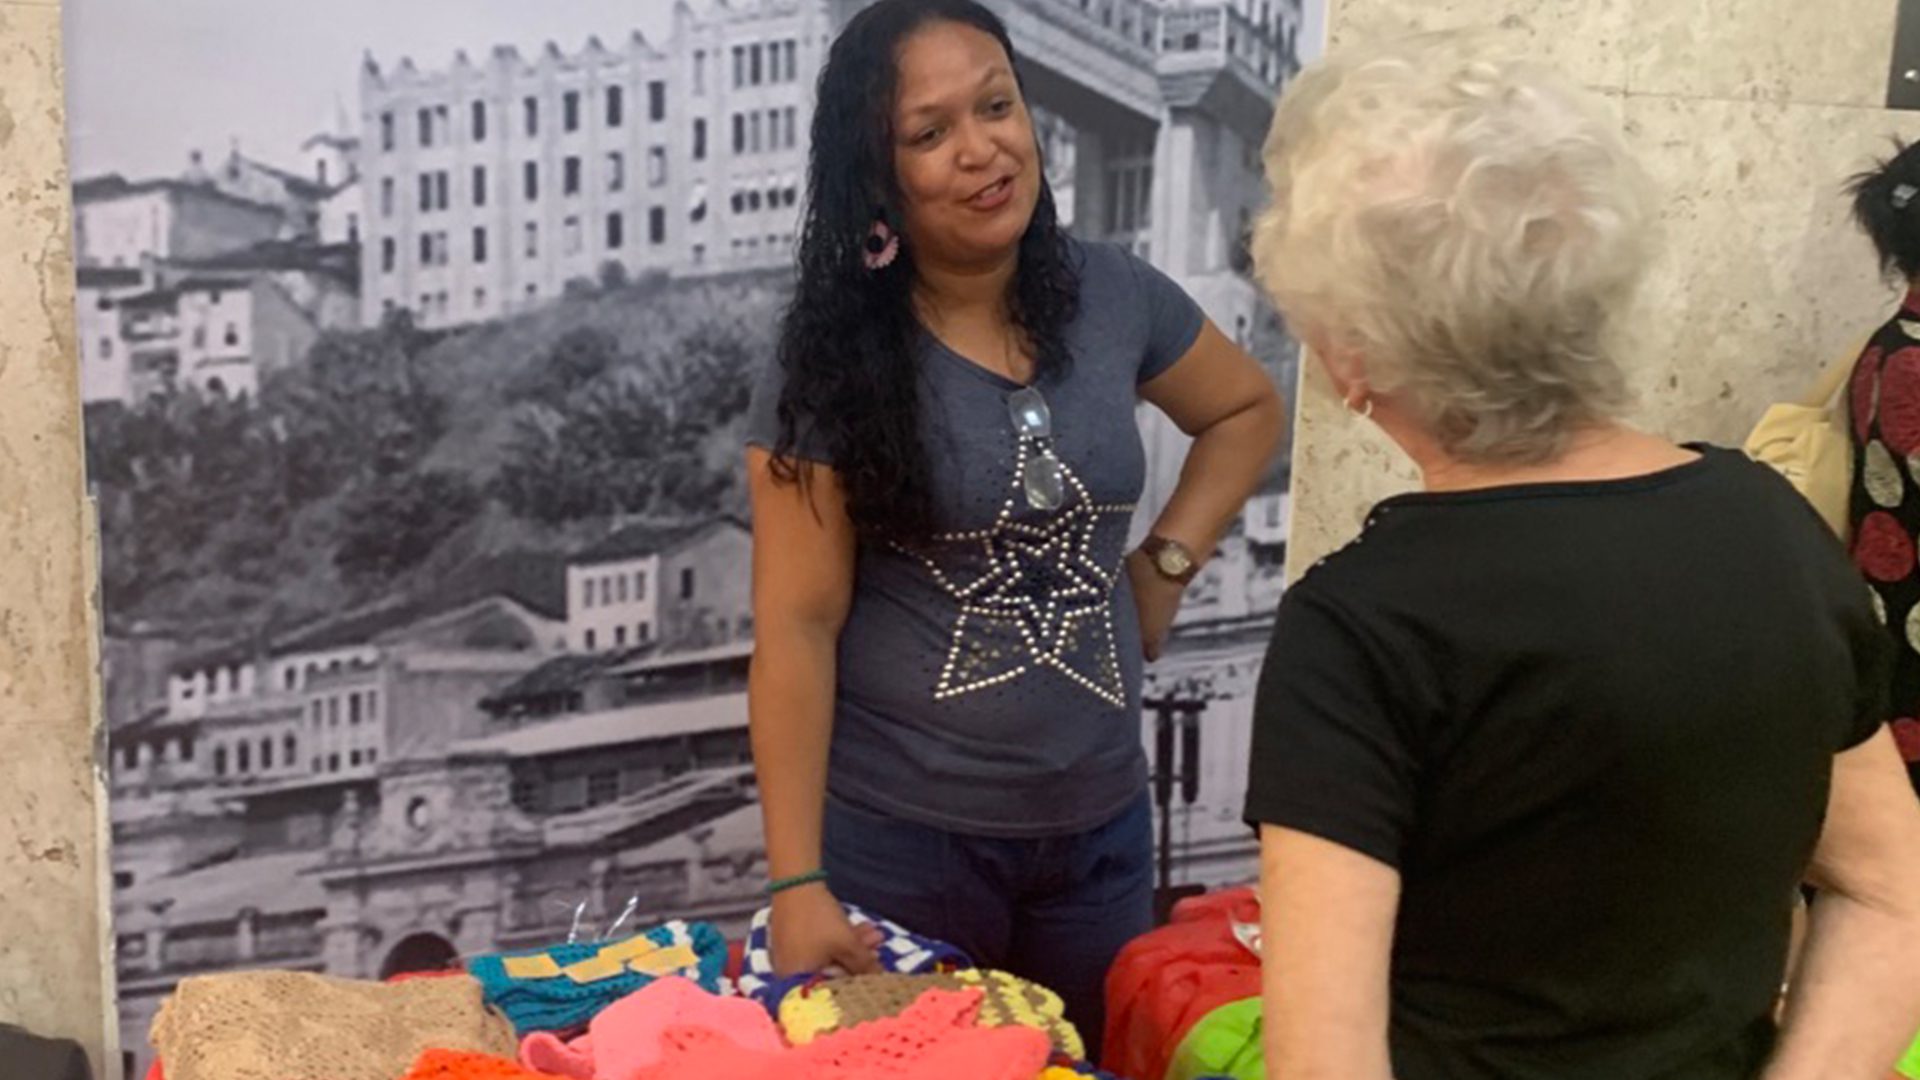 Rita dos Santos é crocheteira e expôs seu trabalho na feira de saúde e empreendedorismo